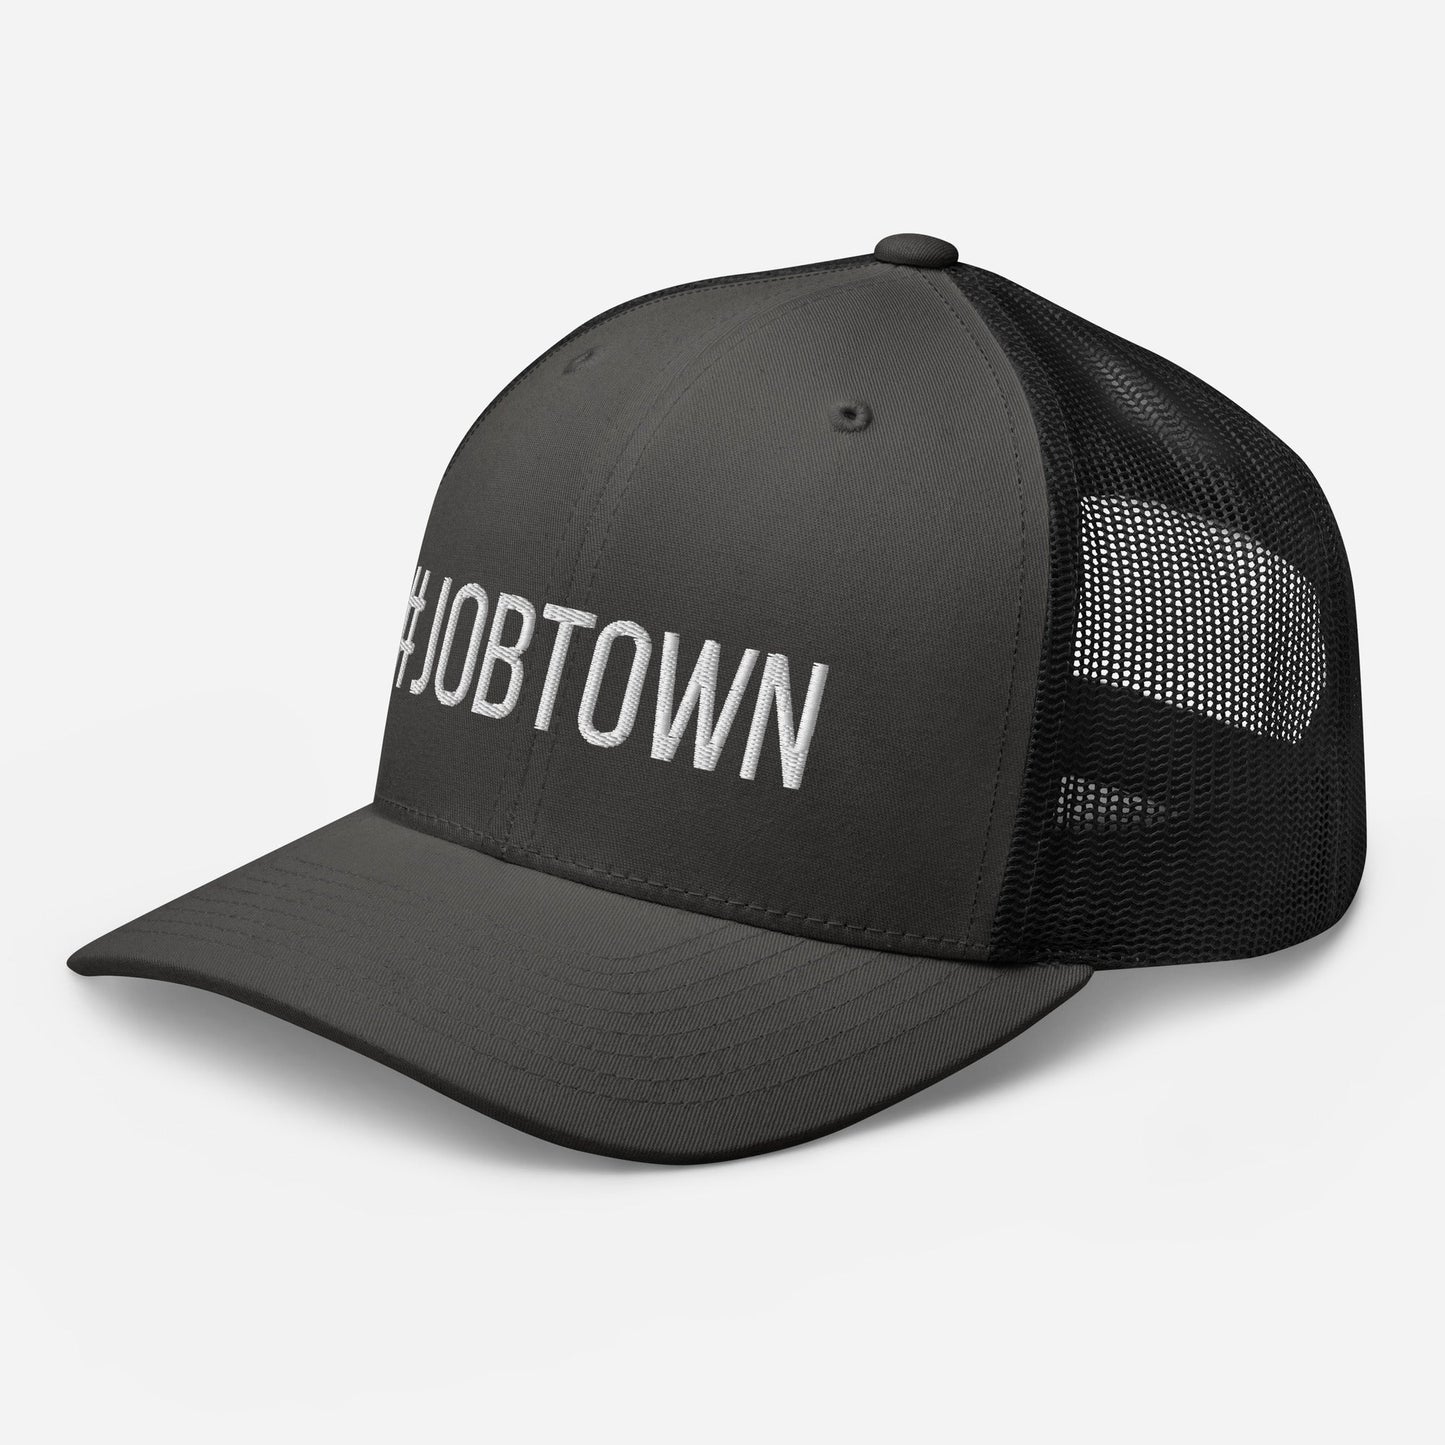 #JOBTOWN Trucker Hat - Grey